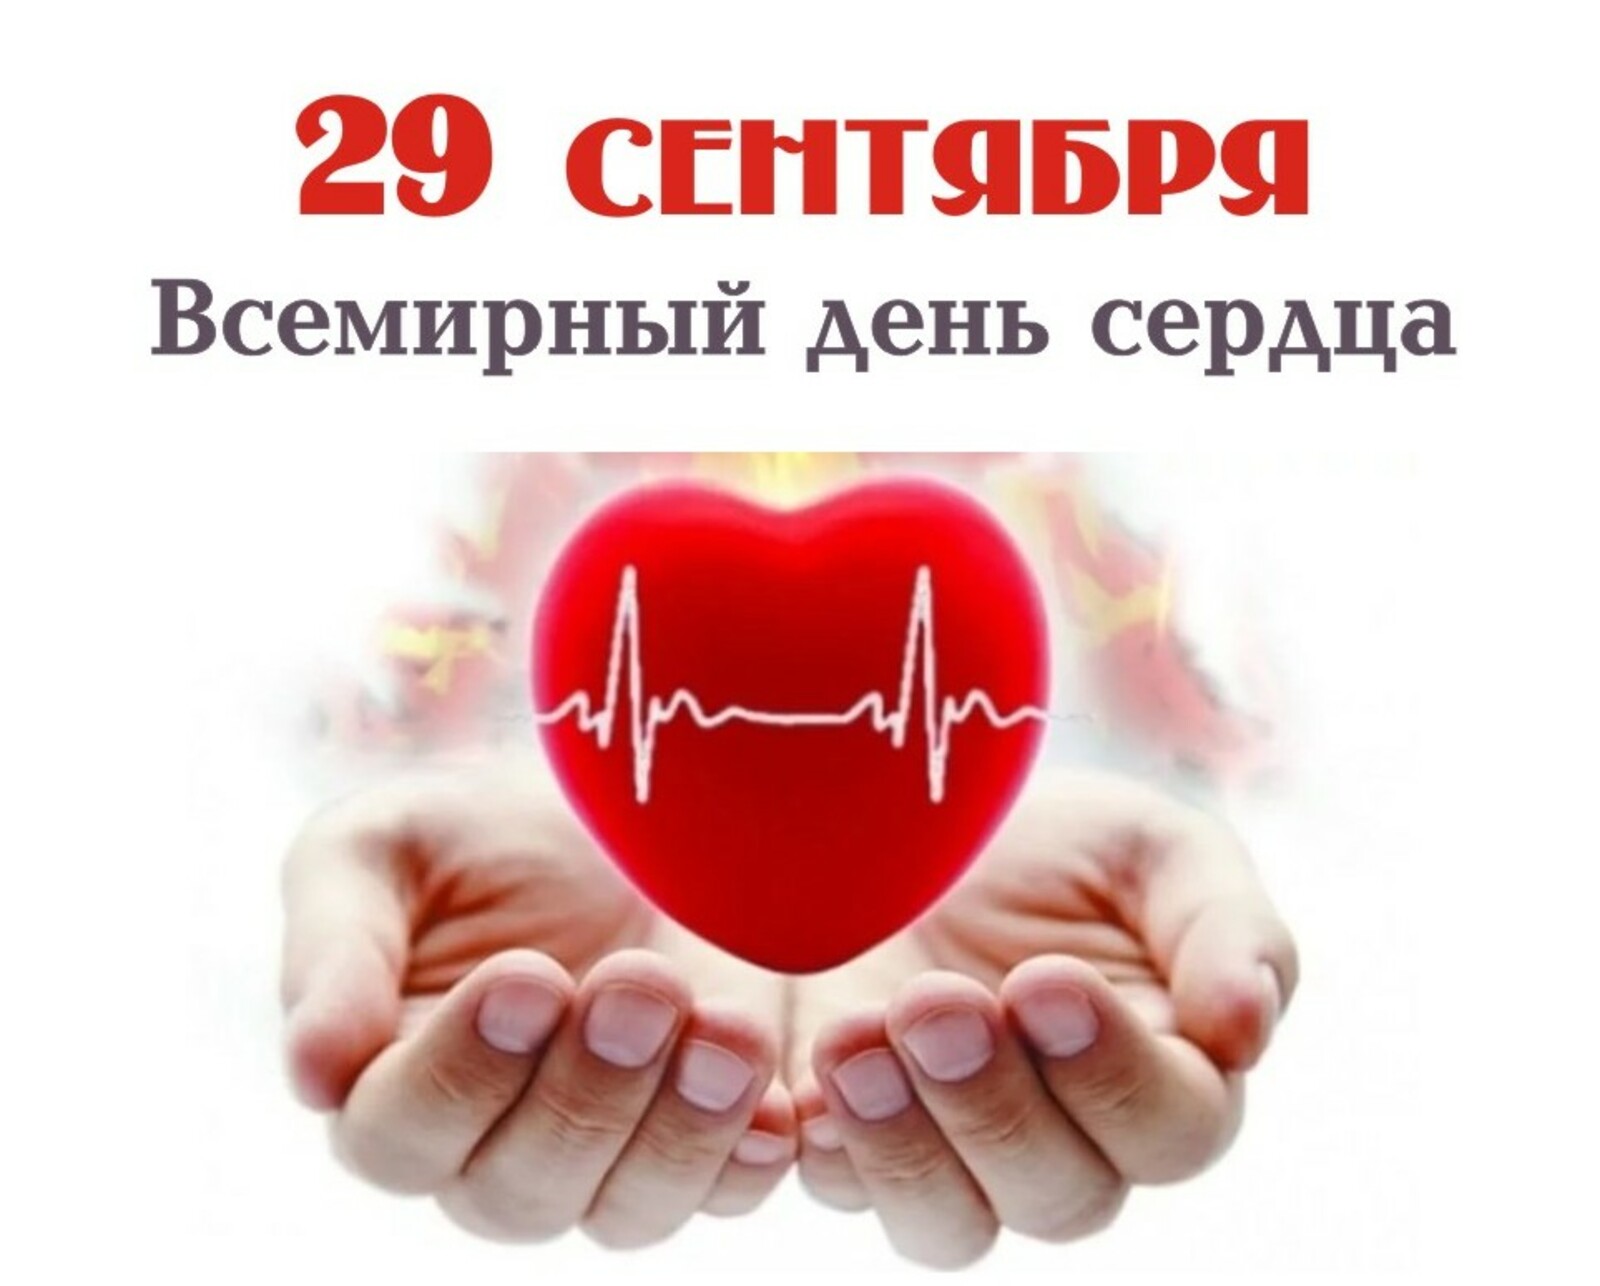 Во Всемирный день сердца – о том, как защитить уязвимые группы населения Казахстана